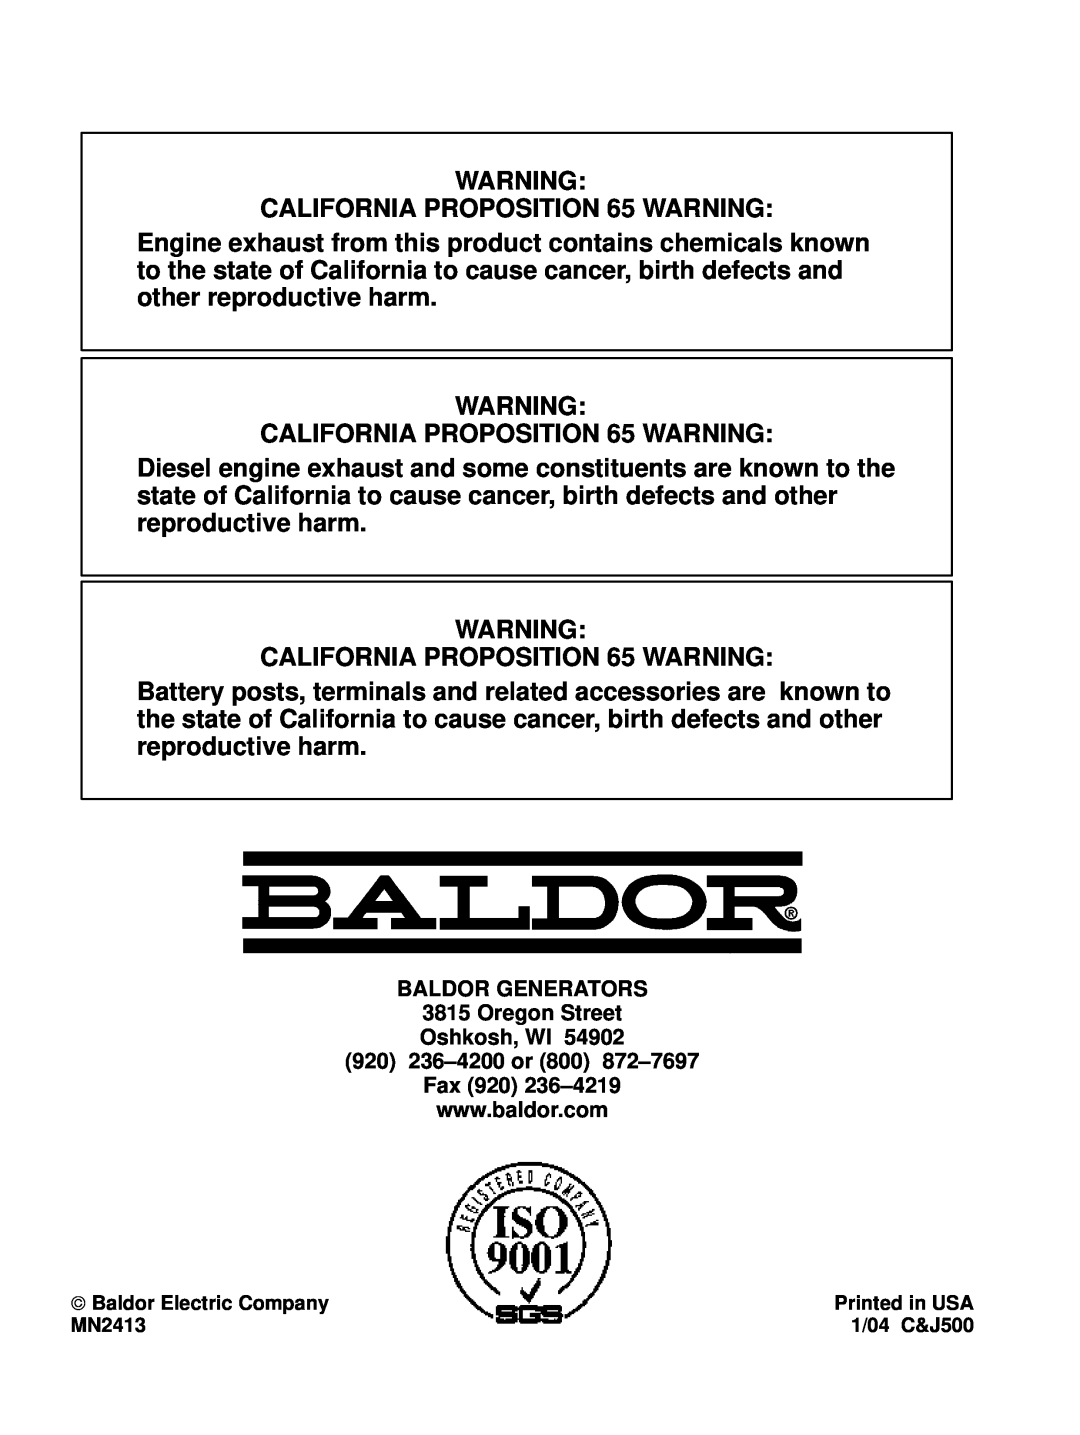 Baldor Series PC Mutlifuel manual BALDOR GENERATORS 3815 Oregon Street Oshkosh, WI, 920 236-4200 or 800 872-7697 Fax 